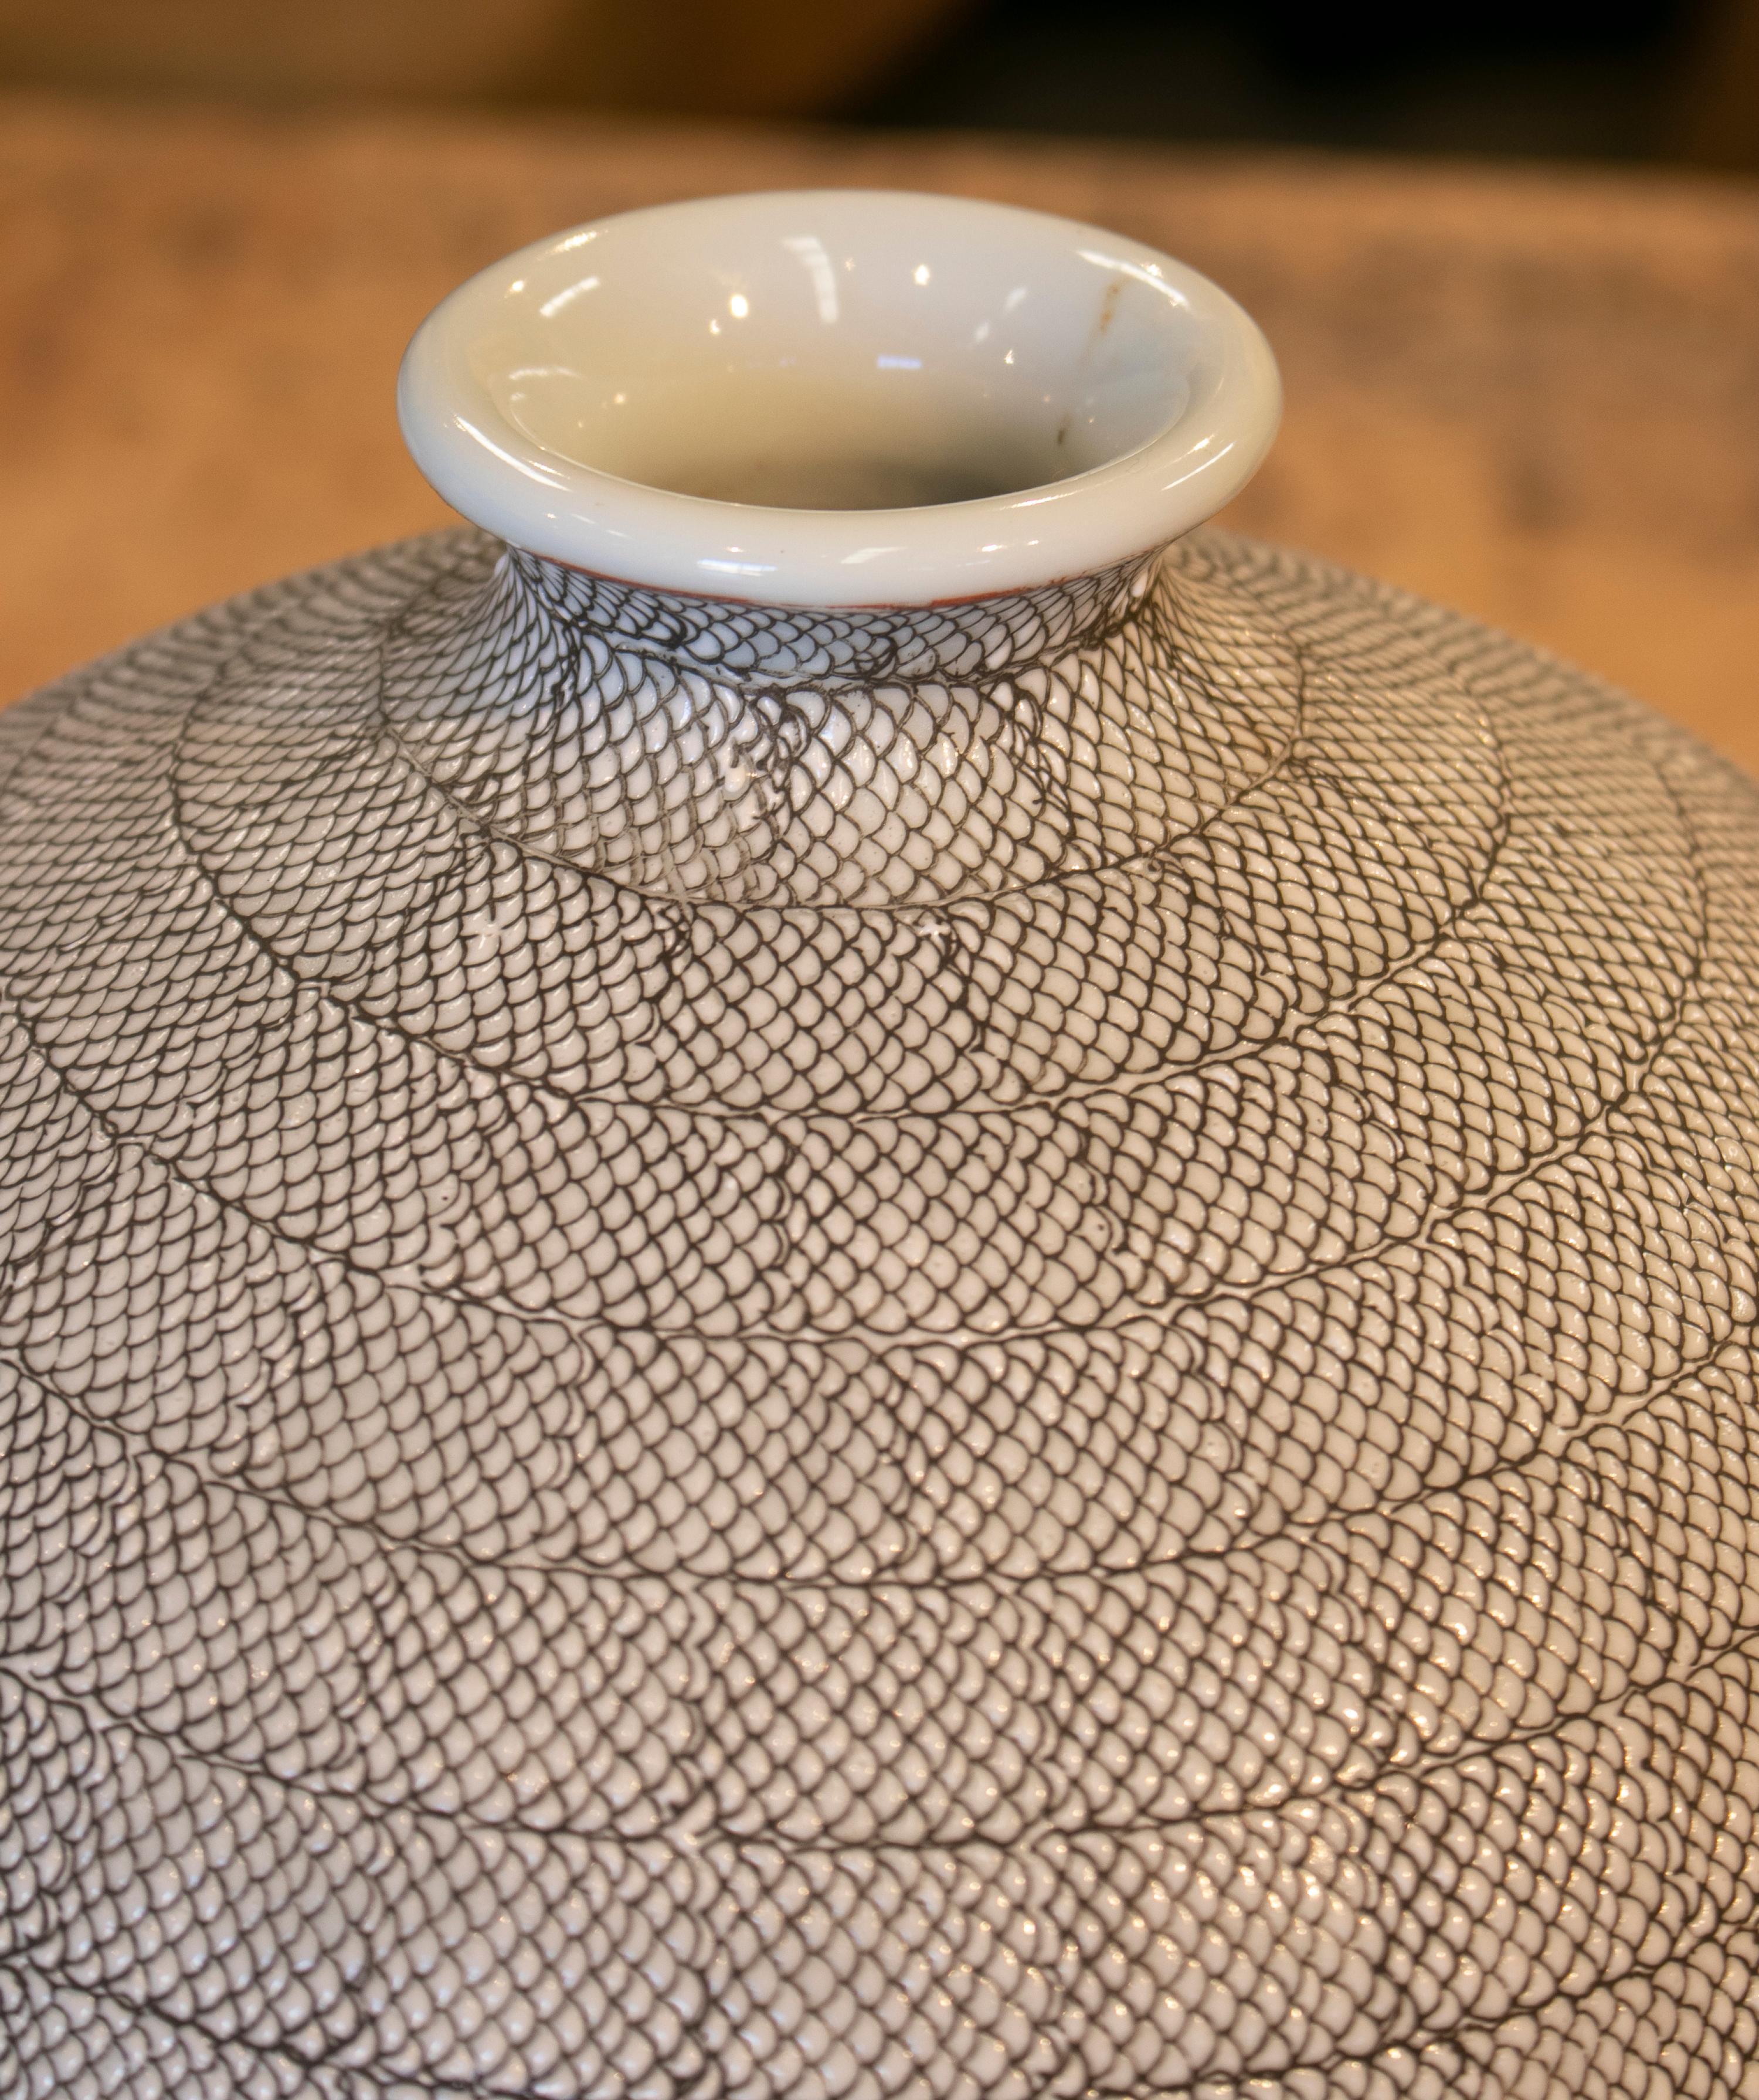 1990s Asiatic White Ceramic Vase with Fish Scales Design 1